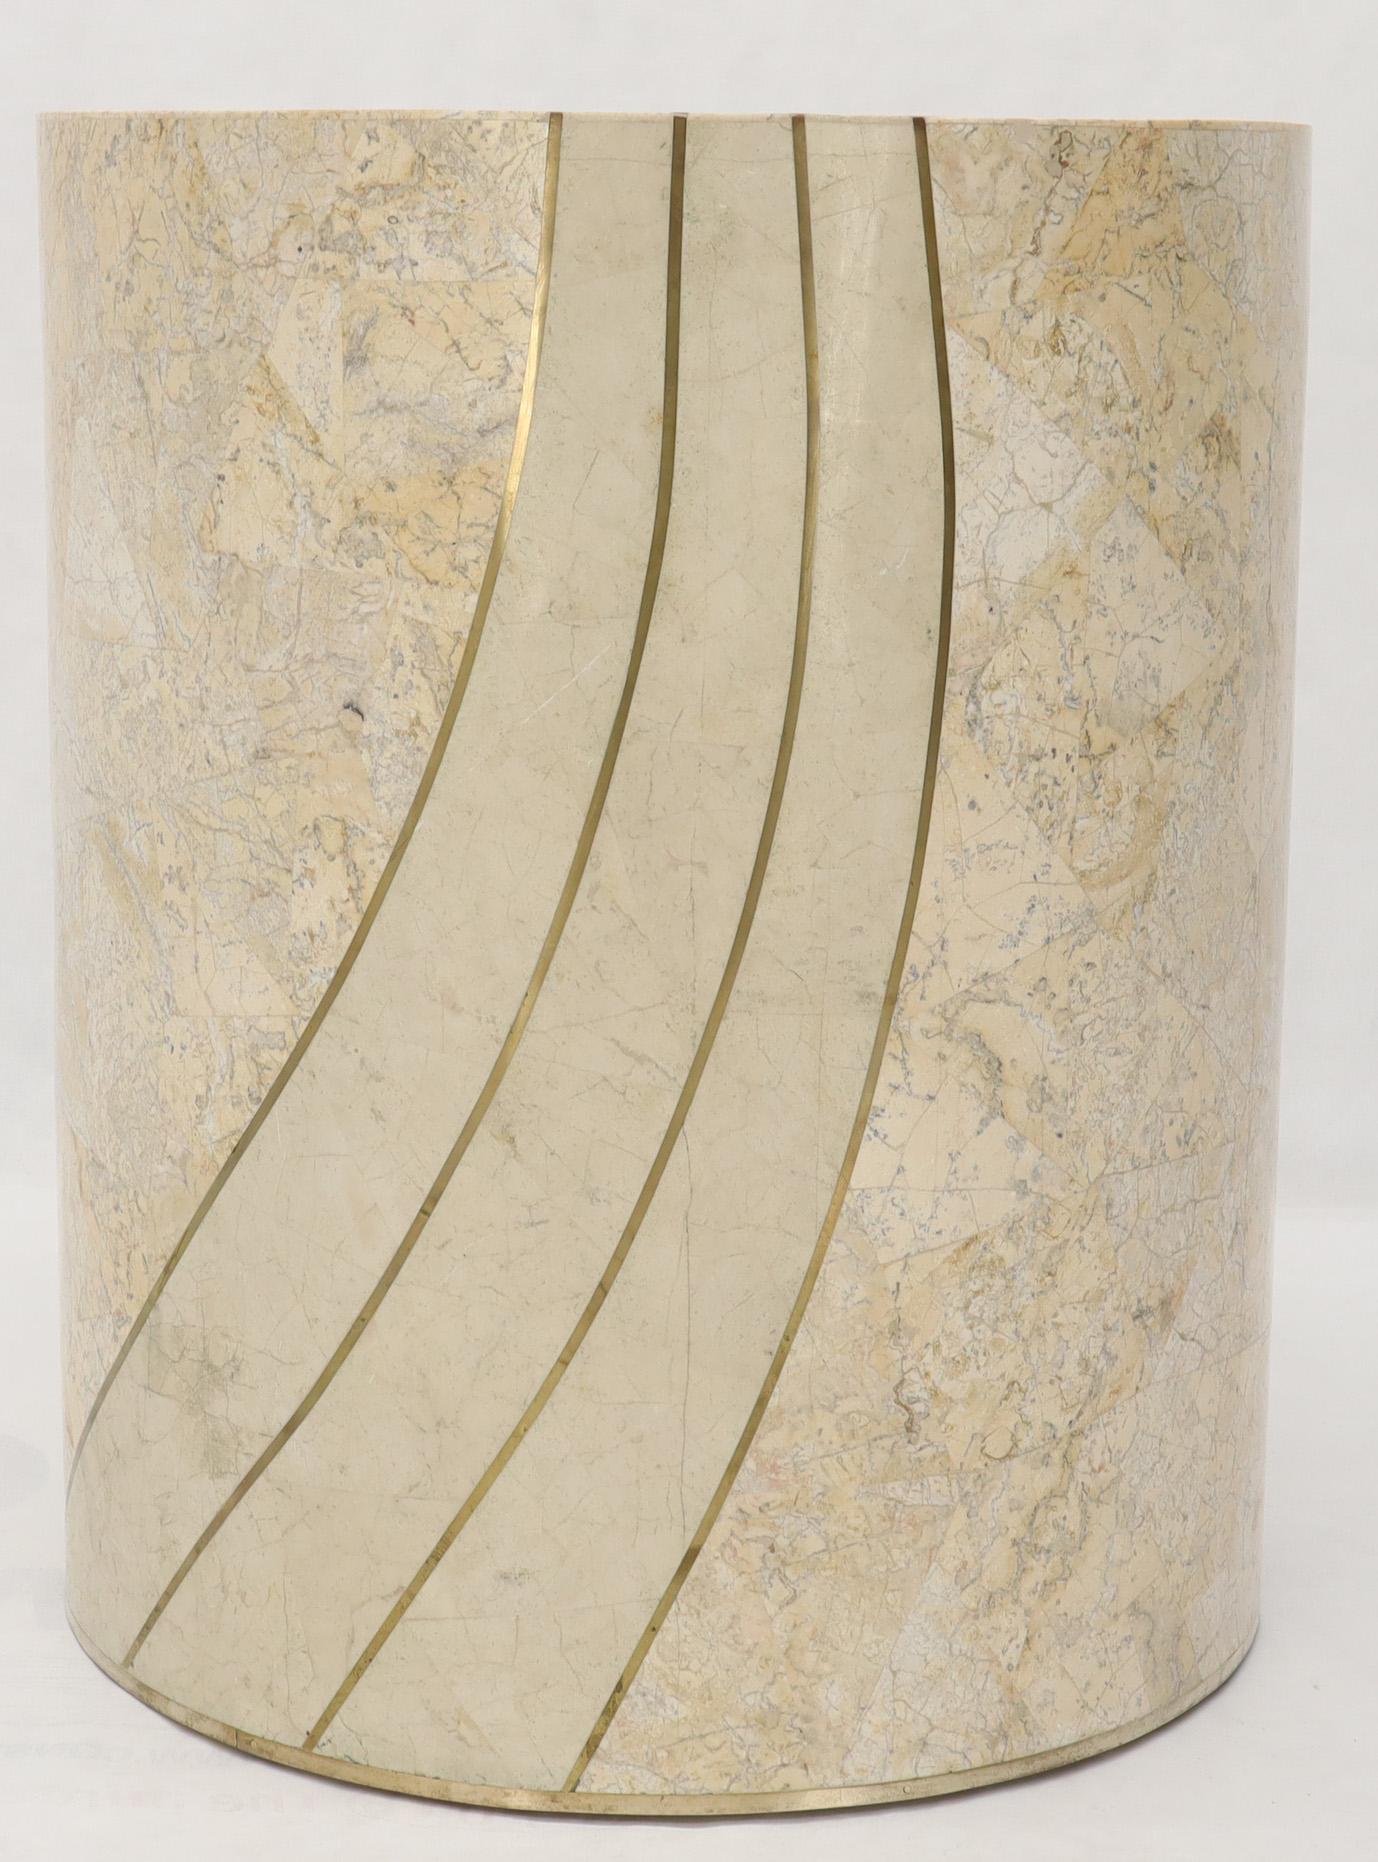 Maintland-Smith zugeschrieben Mid-Century Modern tessellated Stein runden Esstisch Basis Sockel.